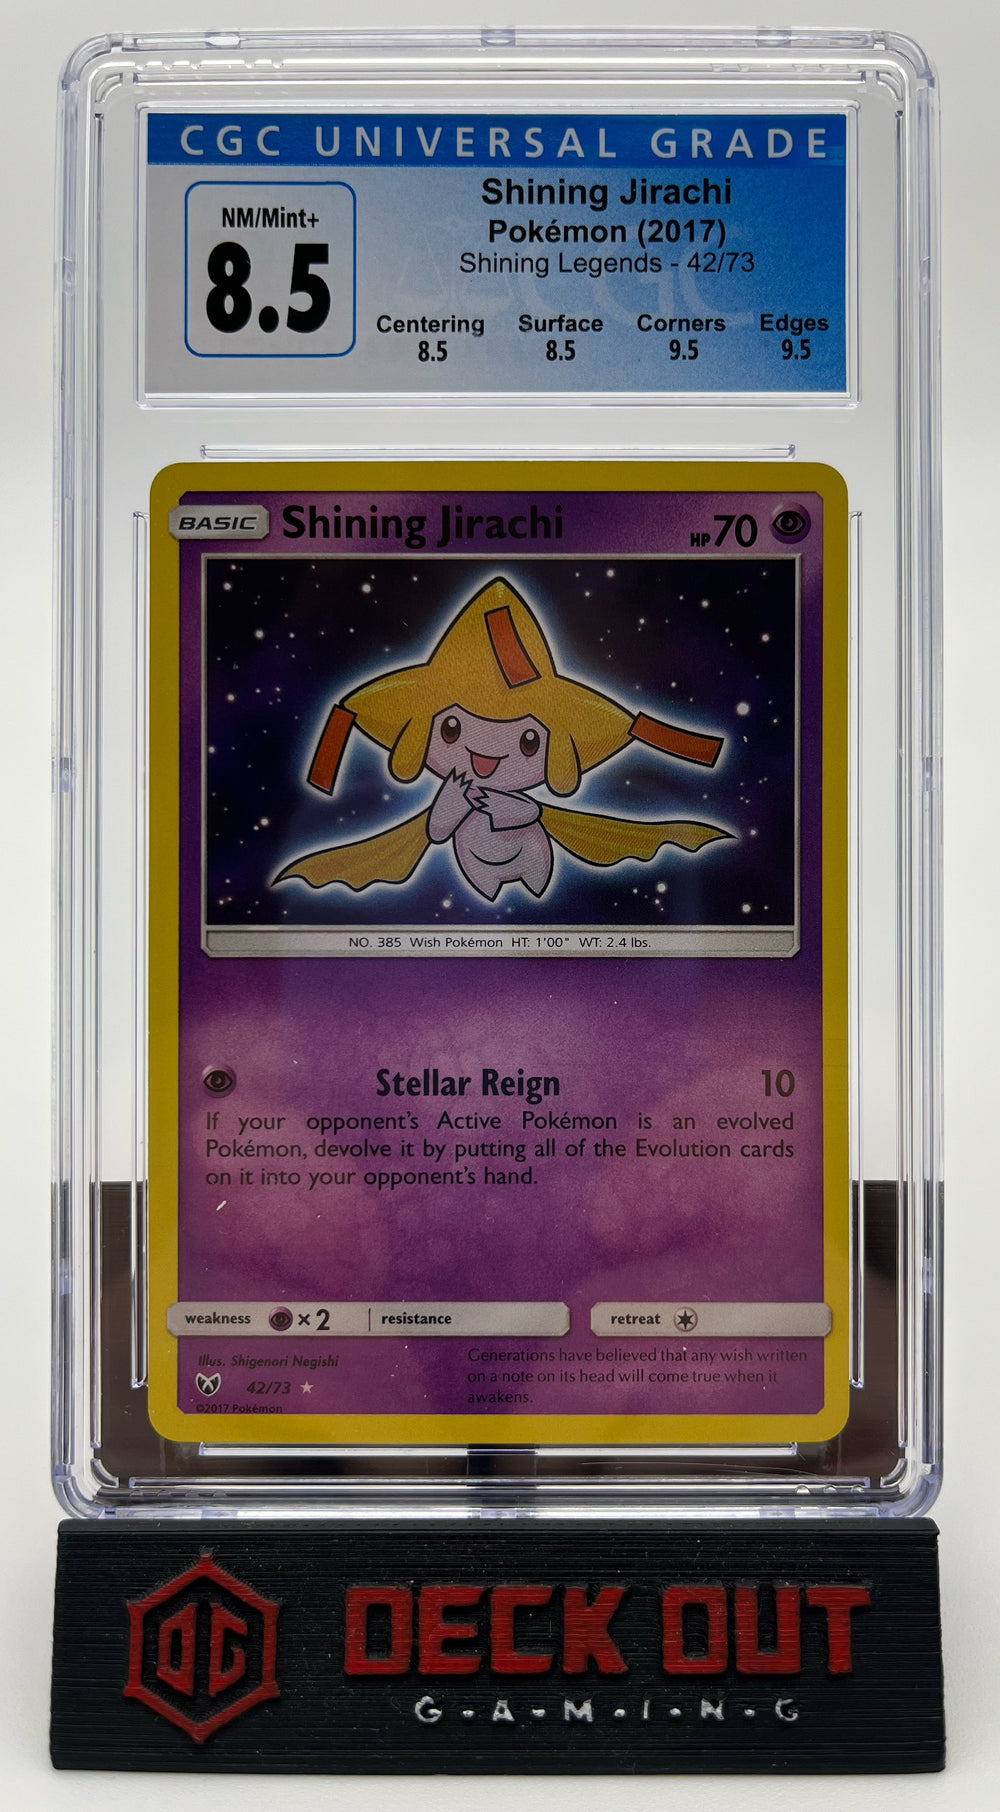 Shining Jirachi - Shining Legends - 42/73 - CGC 8.5 (8.5/8.5/9.5/9.5)